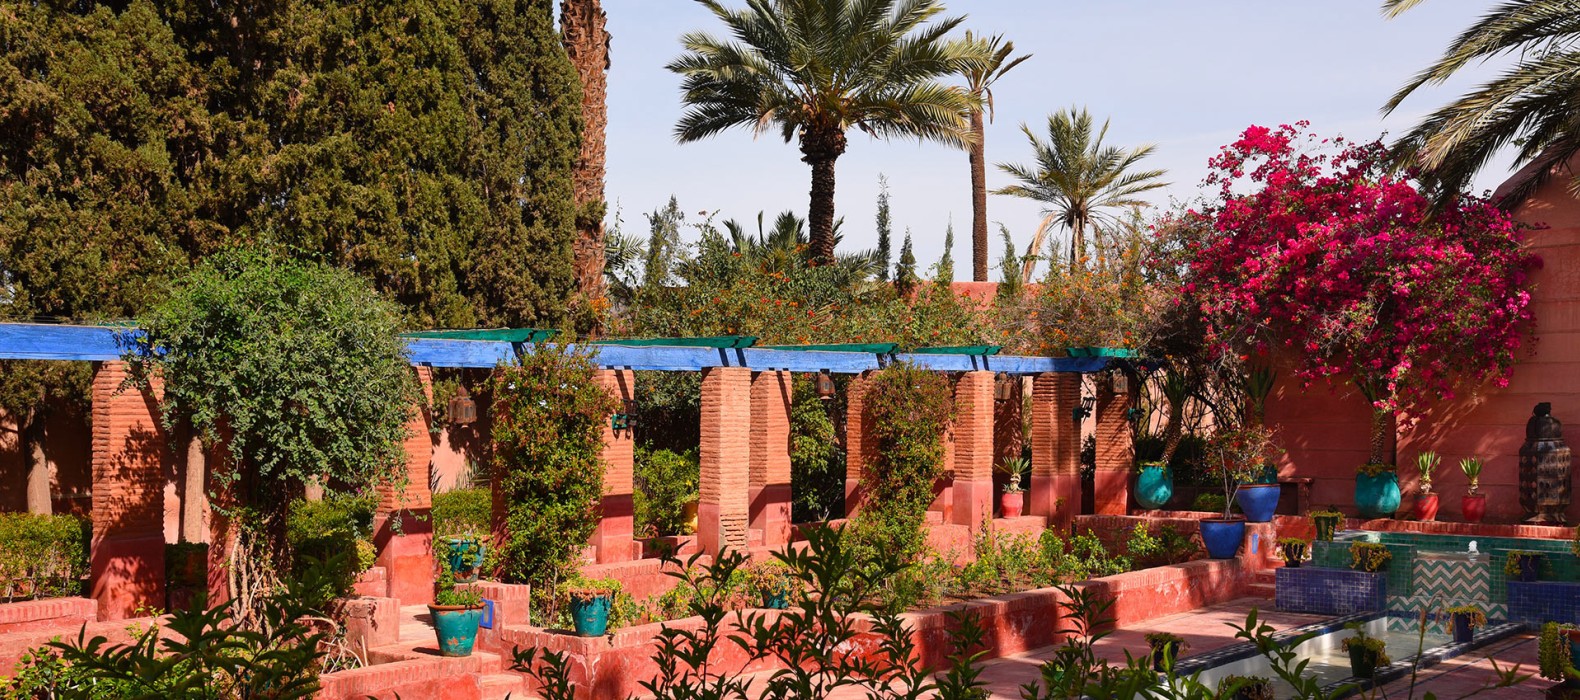 Garden area view of Villa Petite Majorelle in Marrakech